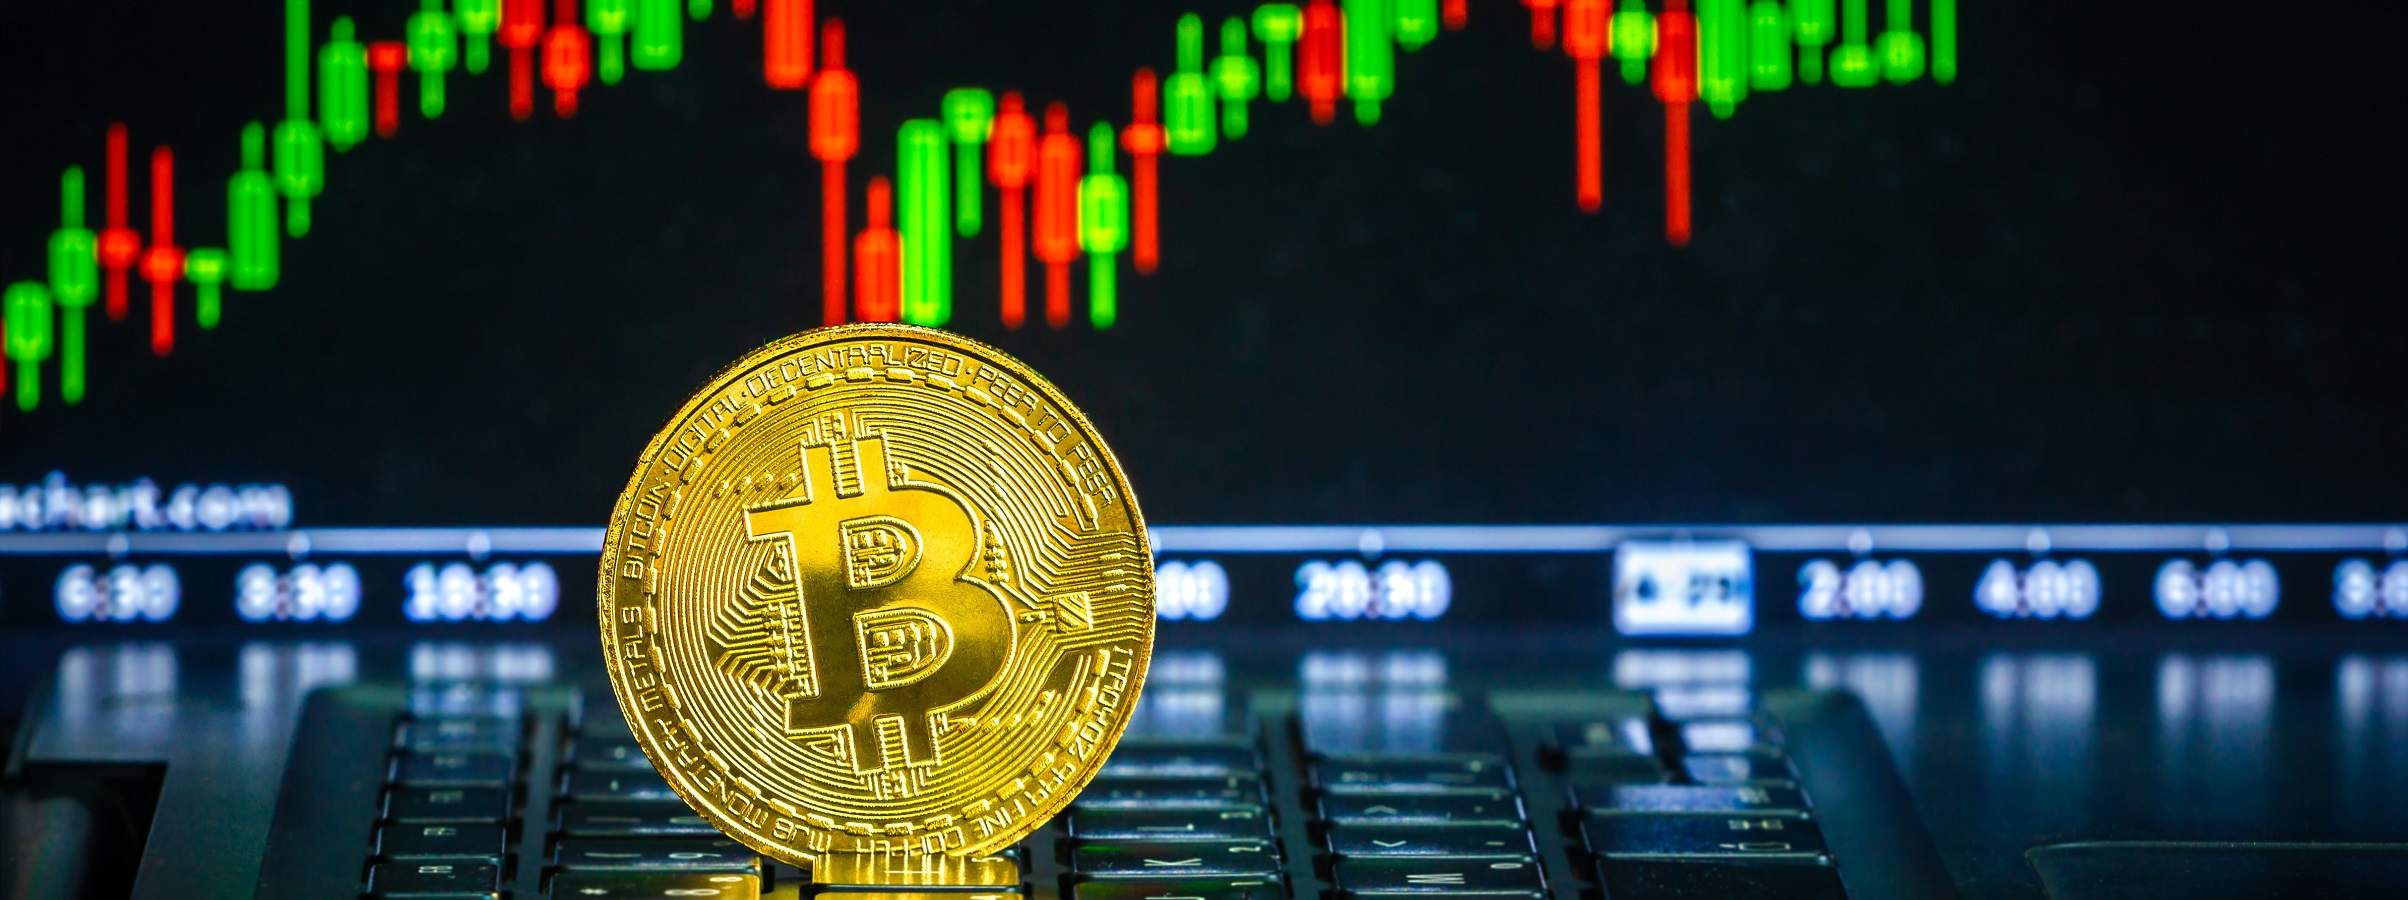 Preço do Bitcoin nos $10.000 novamente? Veja a análise técnica